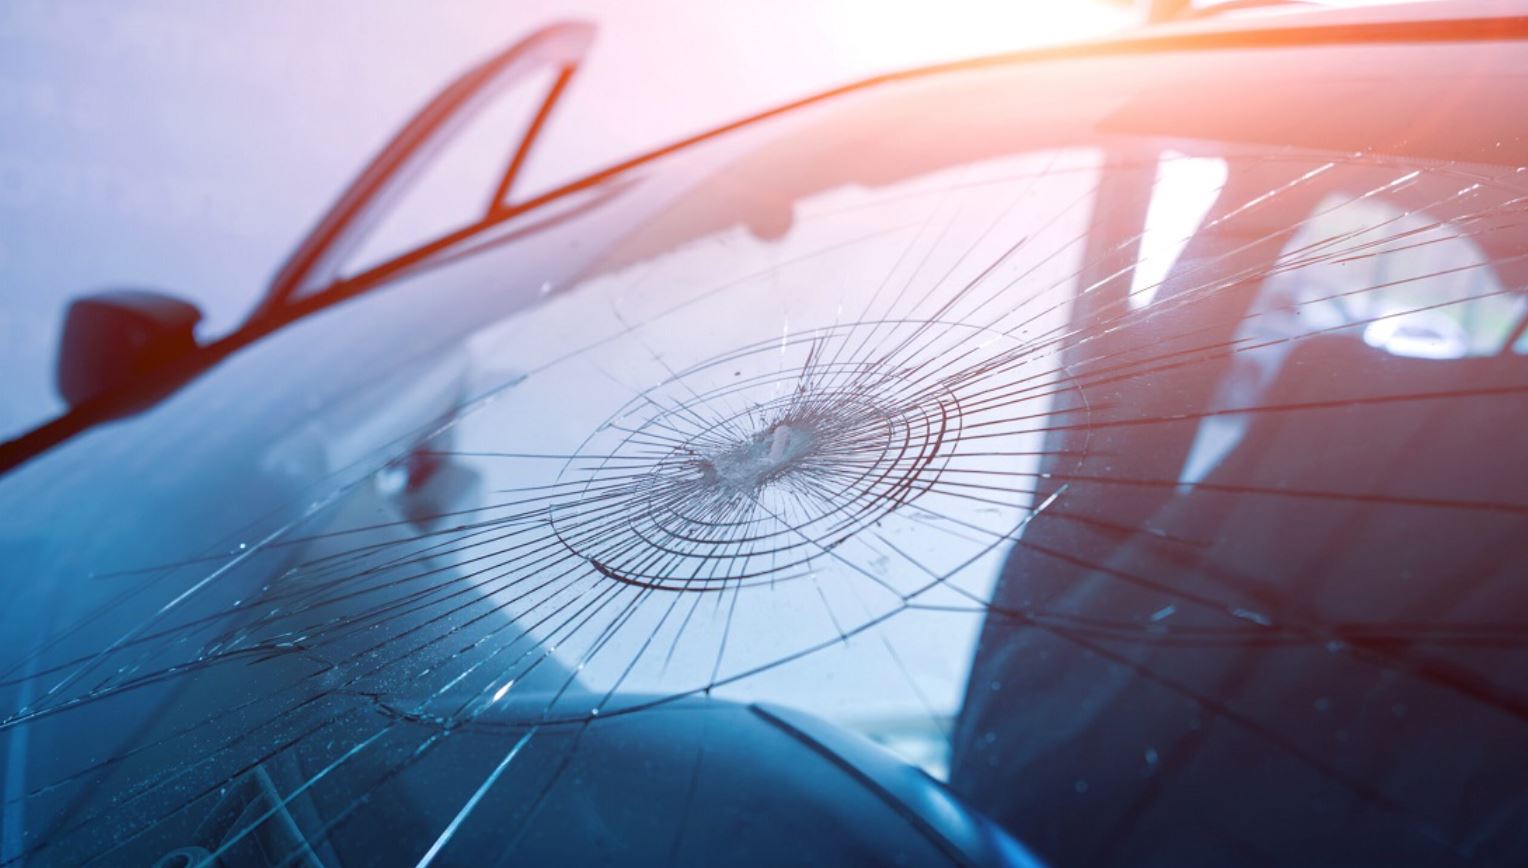 شکستگی شیشه جلو خودرو مشمول بیمه بدنه است؟